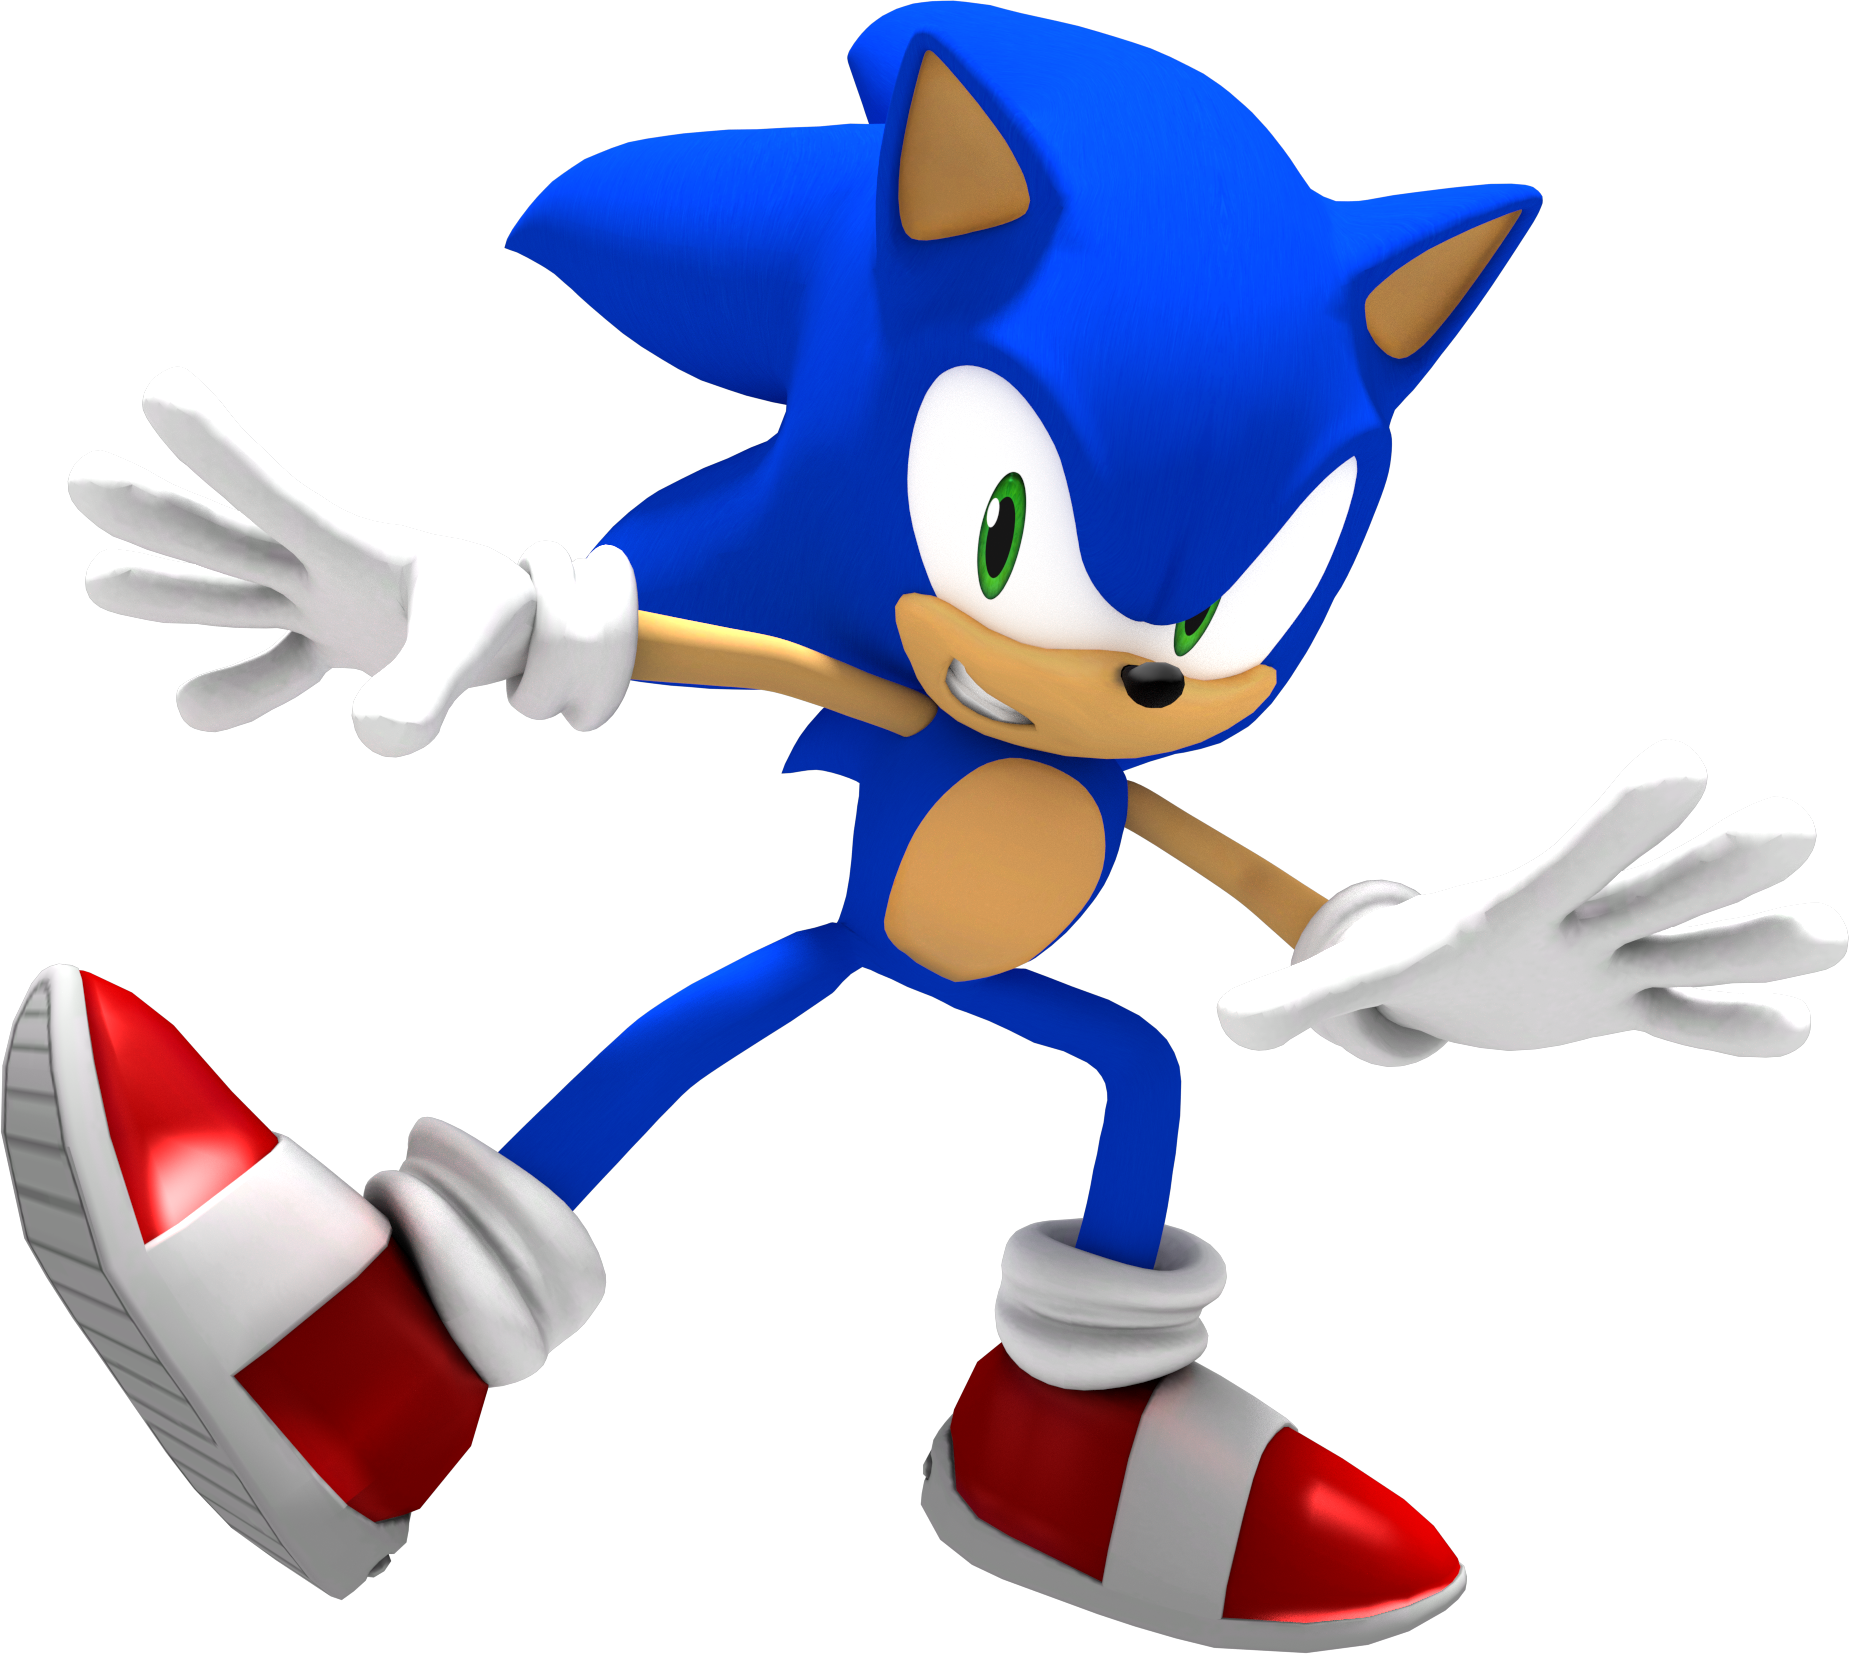 Фон соника без соника. Sonic the Hedgehog 3д. Соник 3 персонажи. Ежик Соник бежит. Соник без фона.